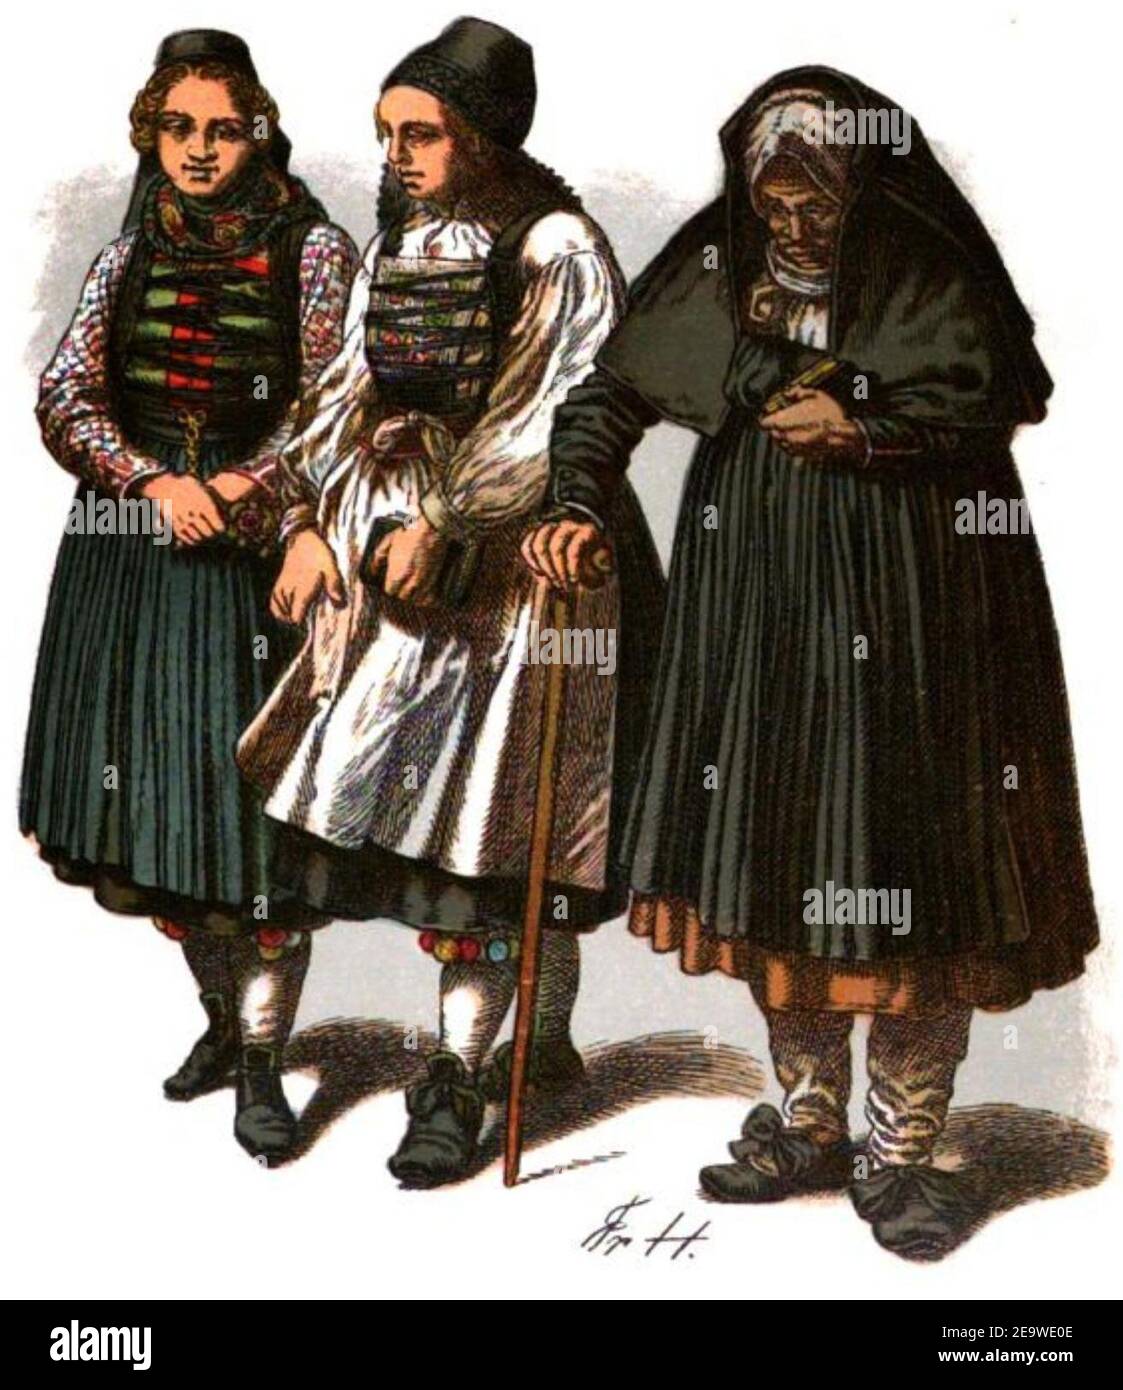 NassTrachtenbuch-T03-Bäuerinnen aus der Gegend von Bidenkopf um 1900. Stock Photo